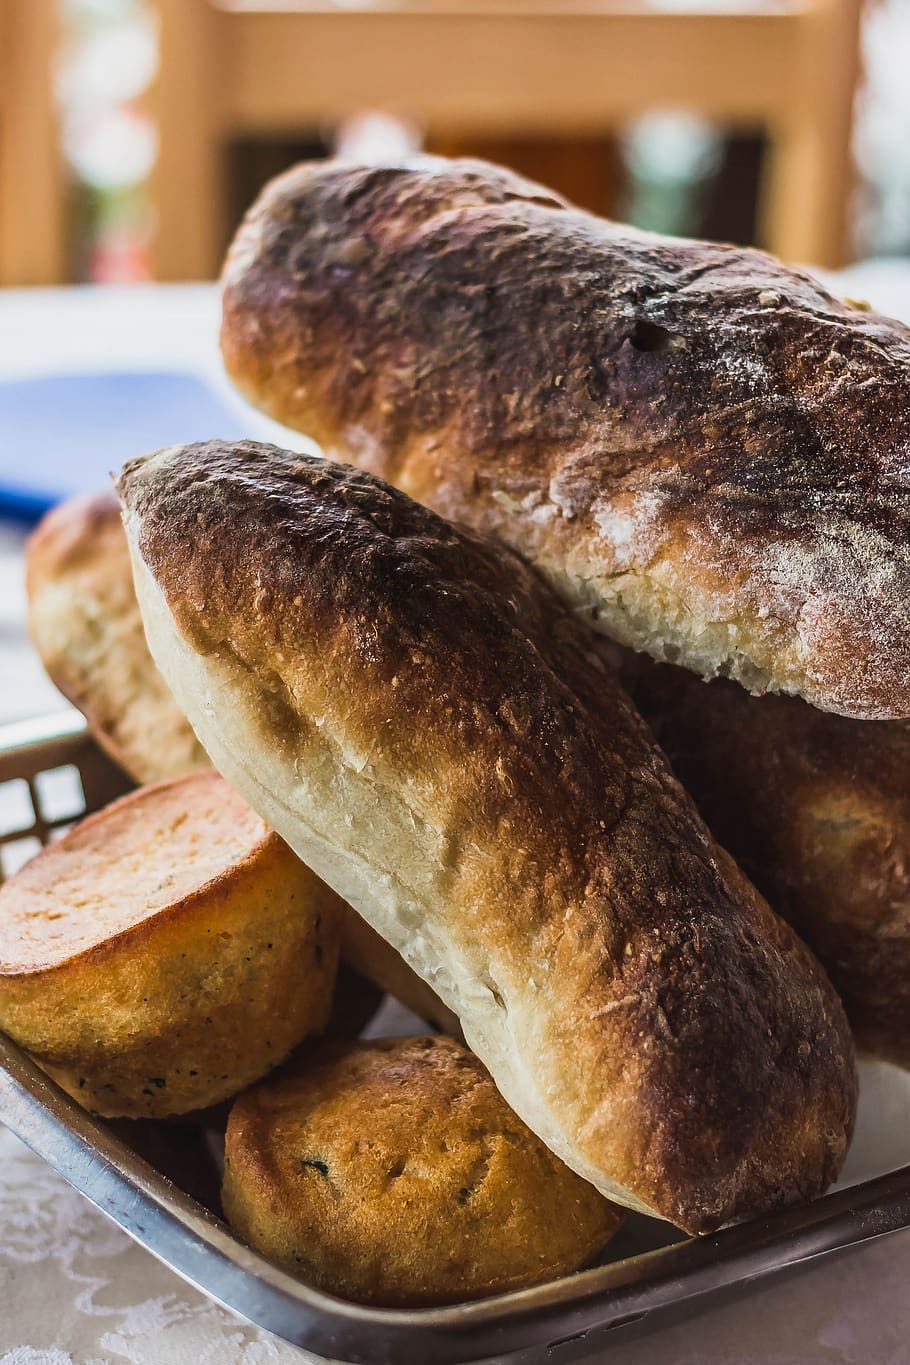 breadbasket, bread, basket, brown, roll, eat, breakfast, food, baked goods, pastries